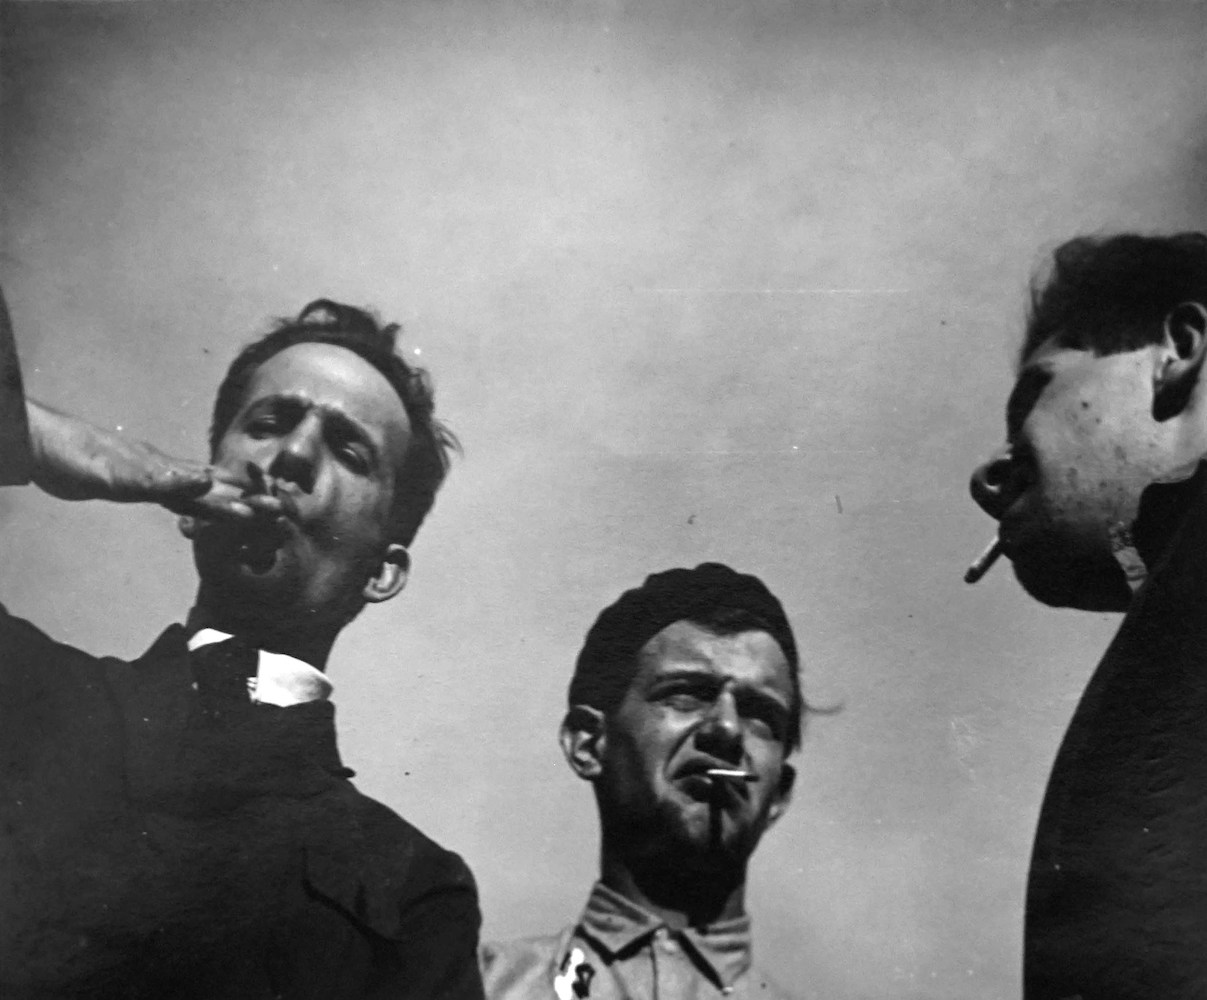 Protestkundgebung am Bauhaus II. Werner Siedhoff, Albert Mentzel, Naftali Rubinstein, rauchend (Bauhäusler)